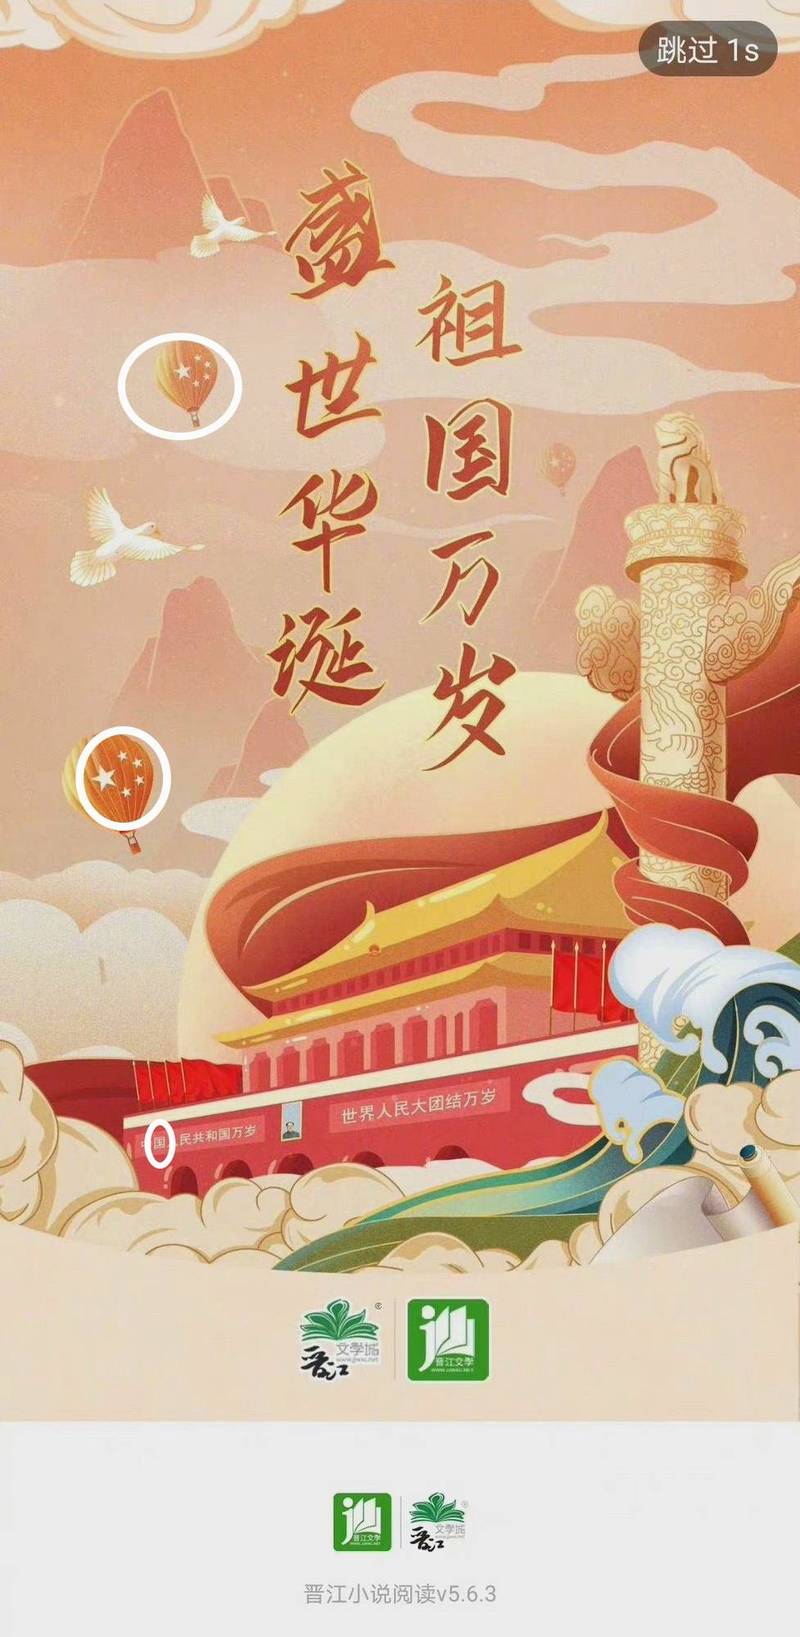 中国「晋江文学城」将官方App图片设为北京天安门漫画，却将中国国号写成「中国人民共和国」，美工人员因此被开除，其上级也遭到处分。（翻摄自观察者网）(photo:LTN)